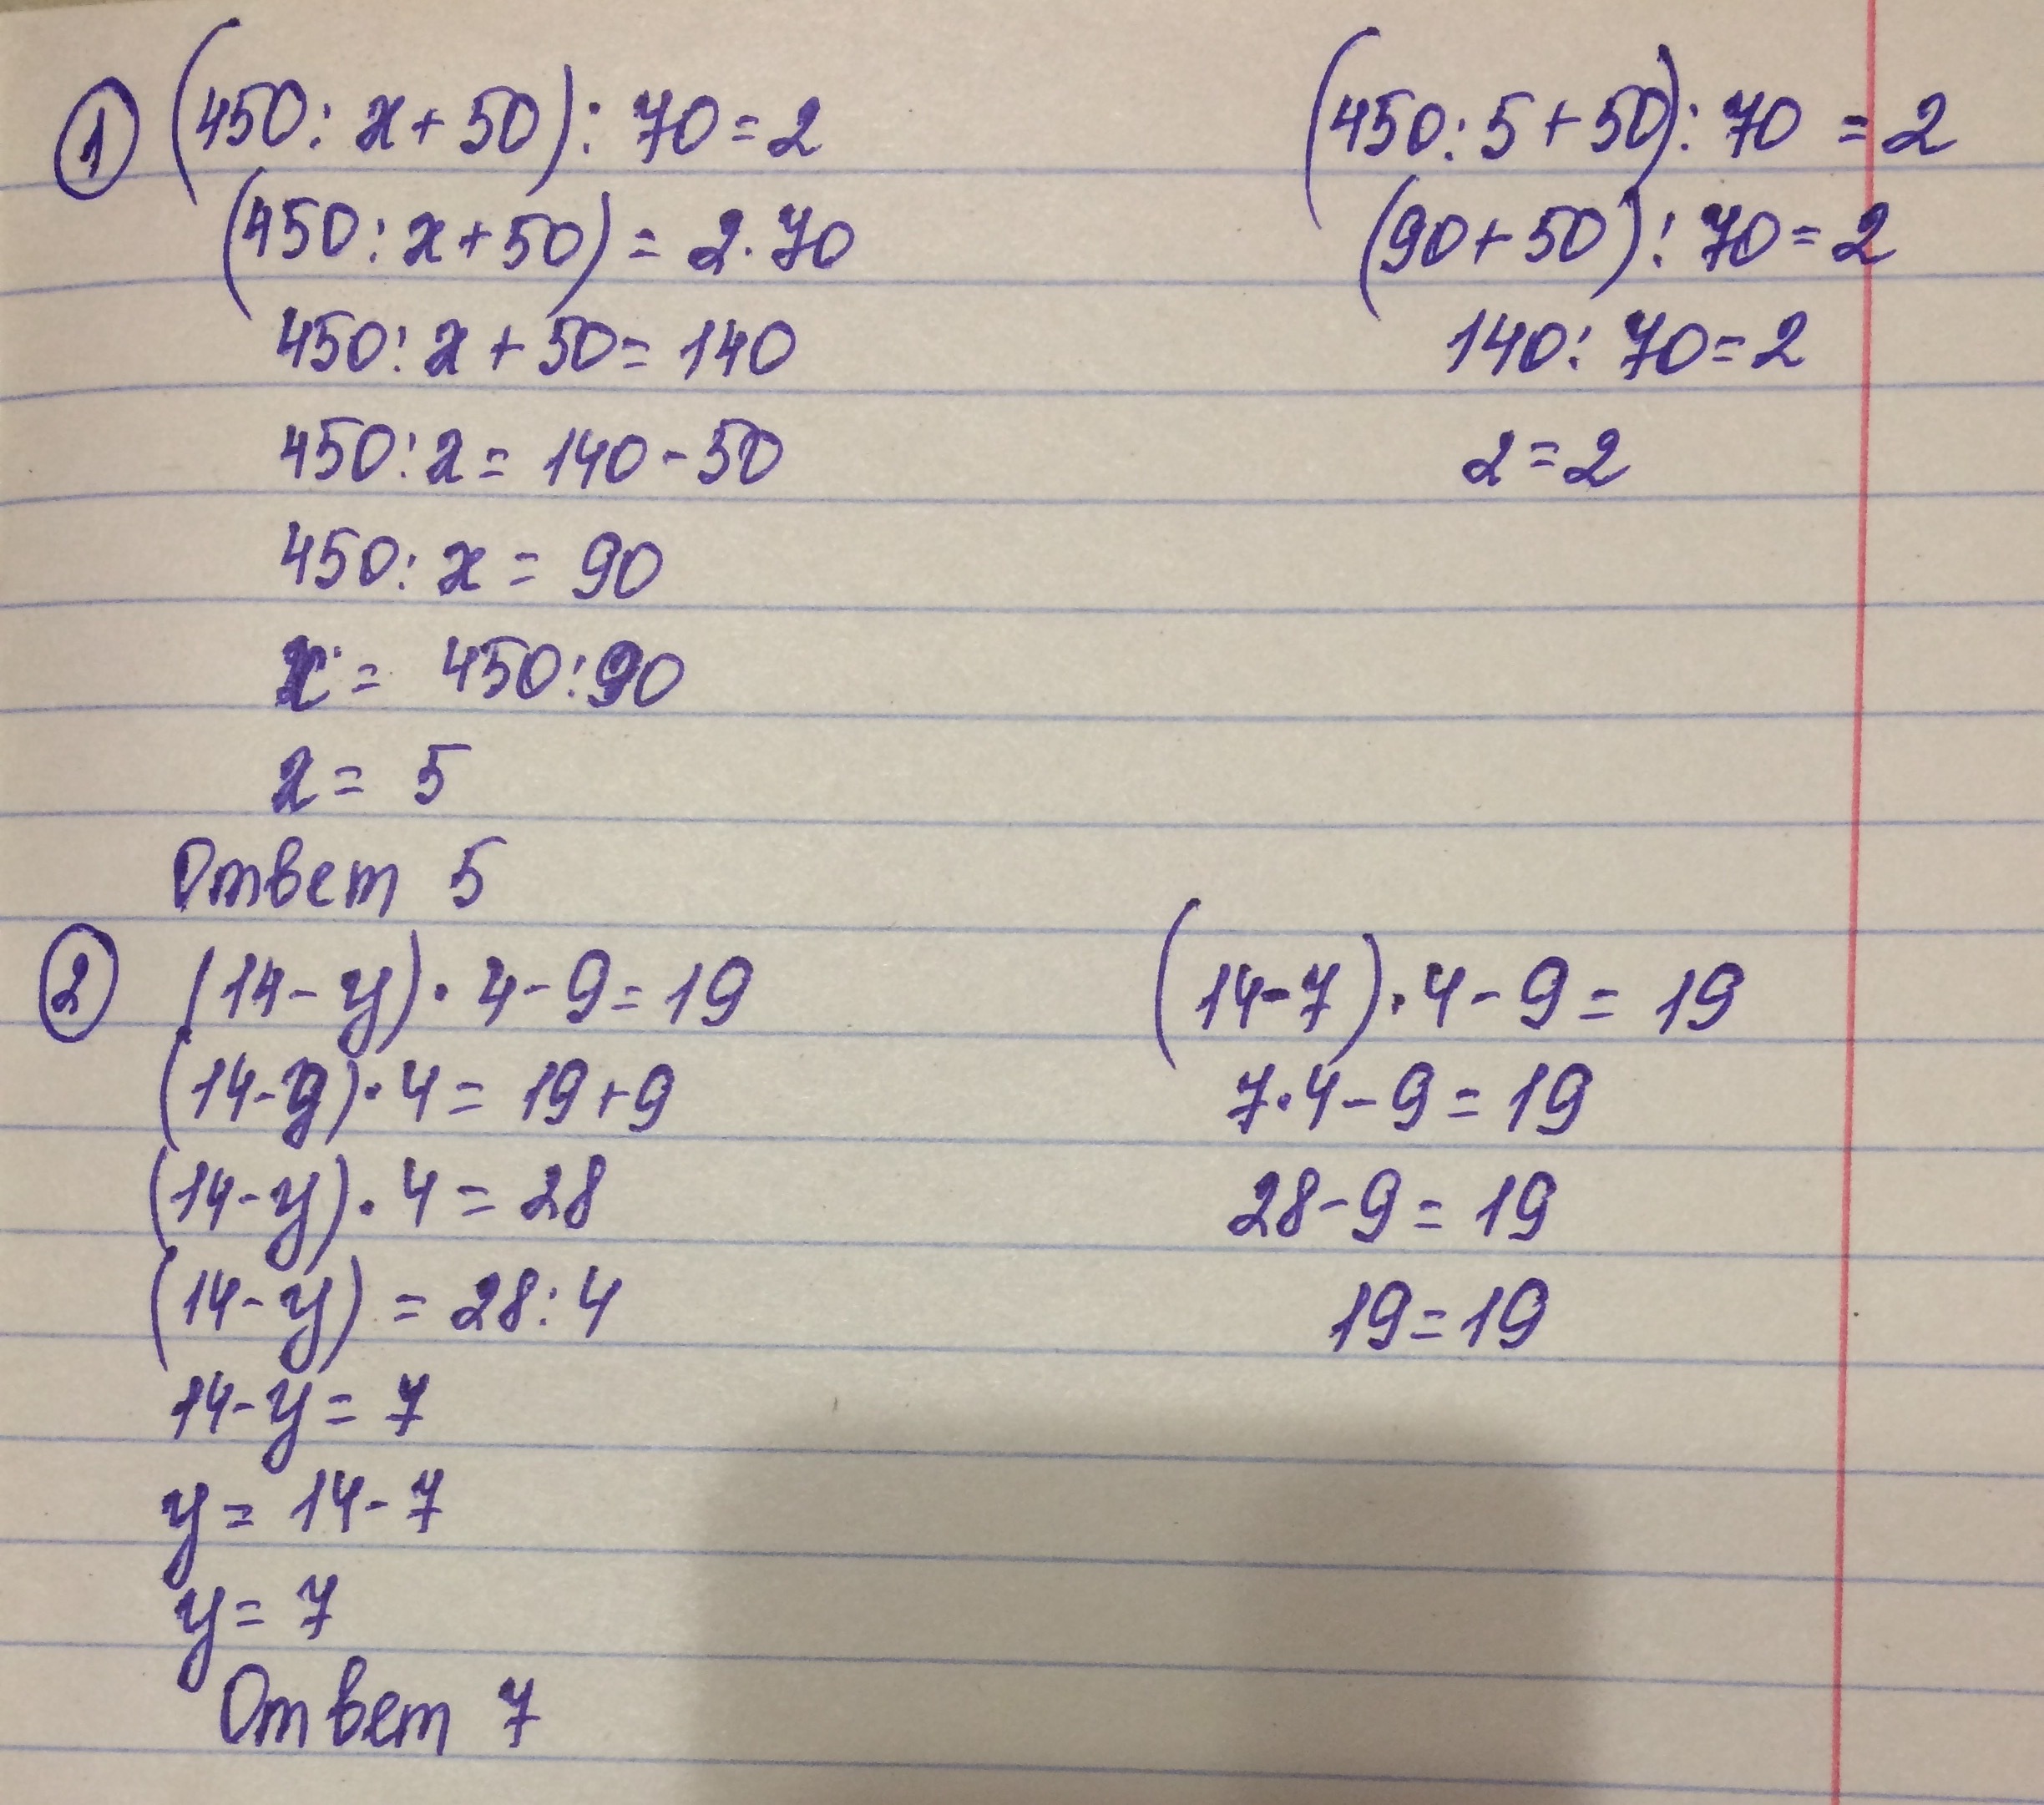 Х 9 17 18. (450 :Х+50):70=2. Решение уравнения 450:x+50 70 2. (450:Х+50):70. Решить уравнение 70-х=2.